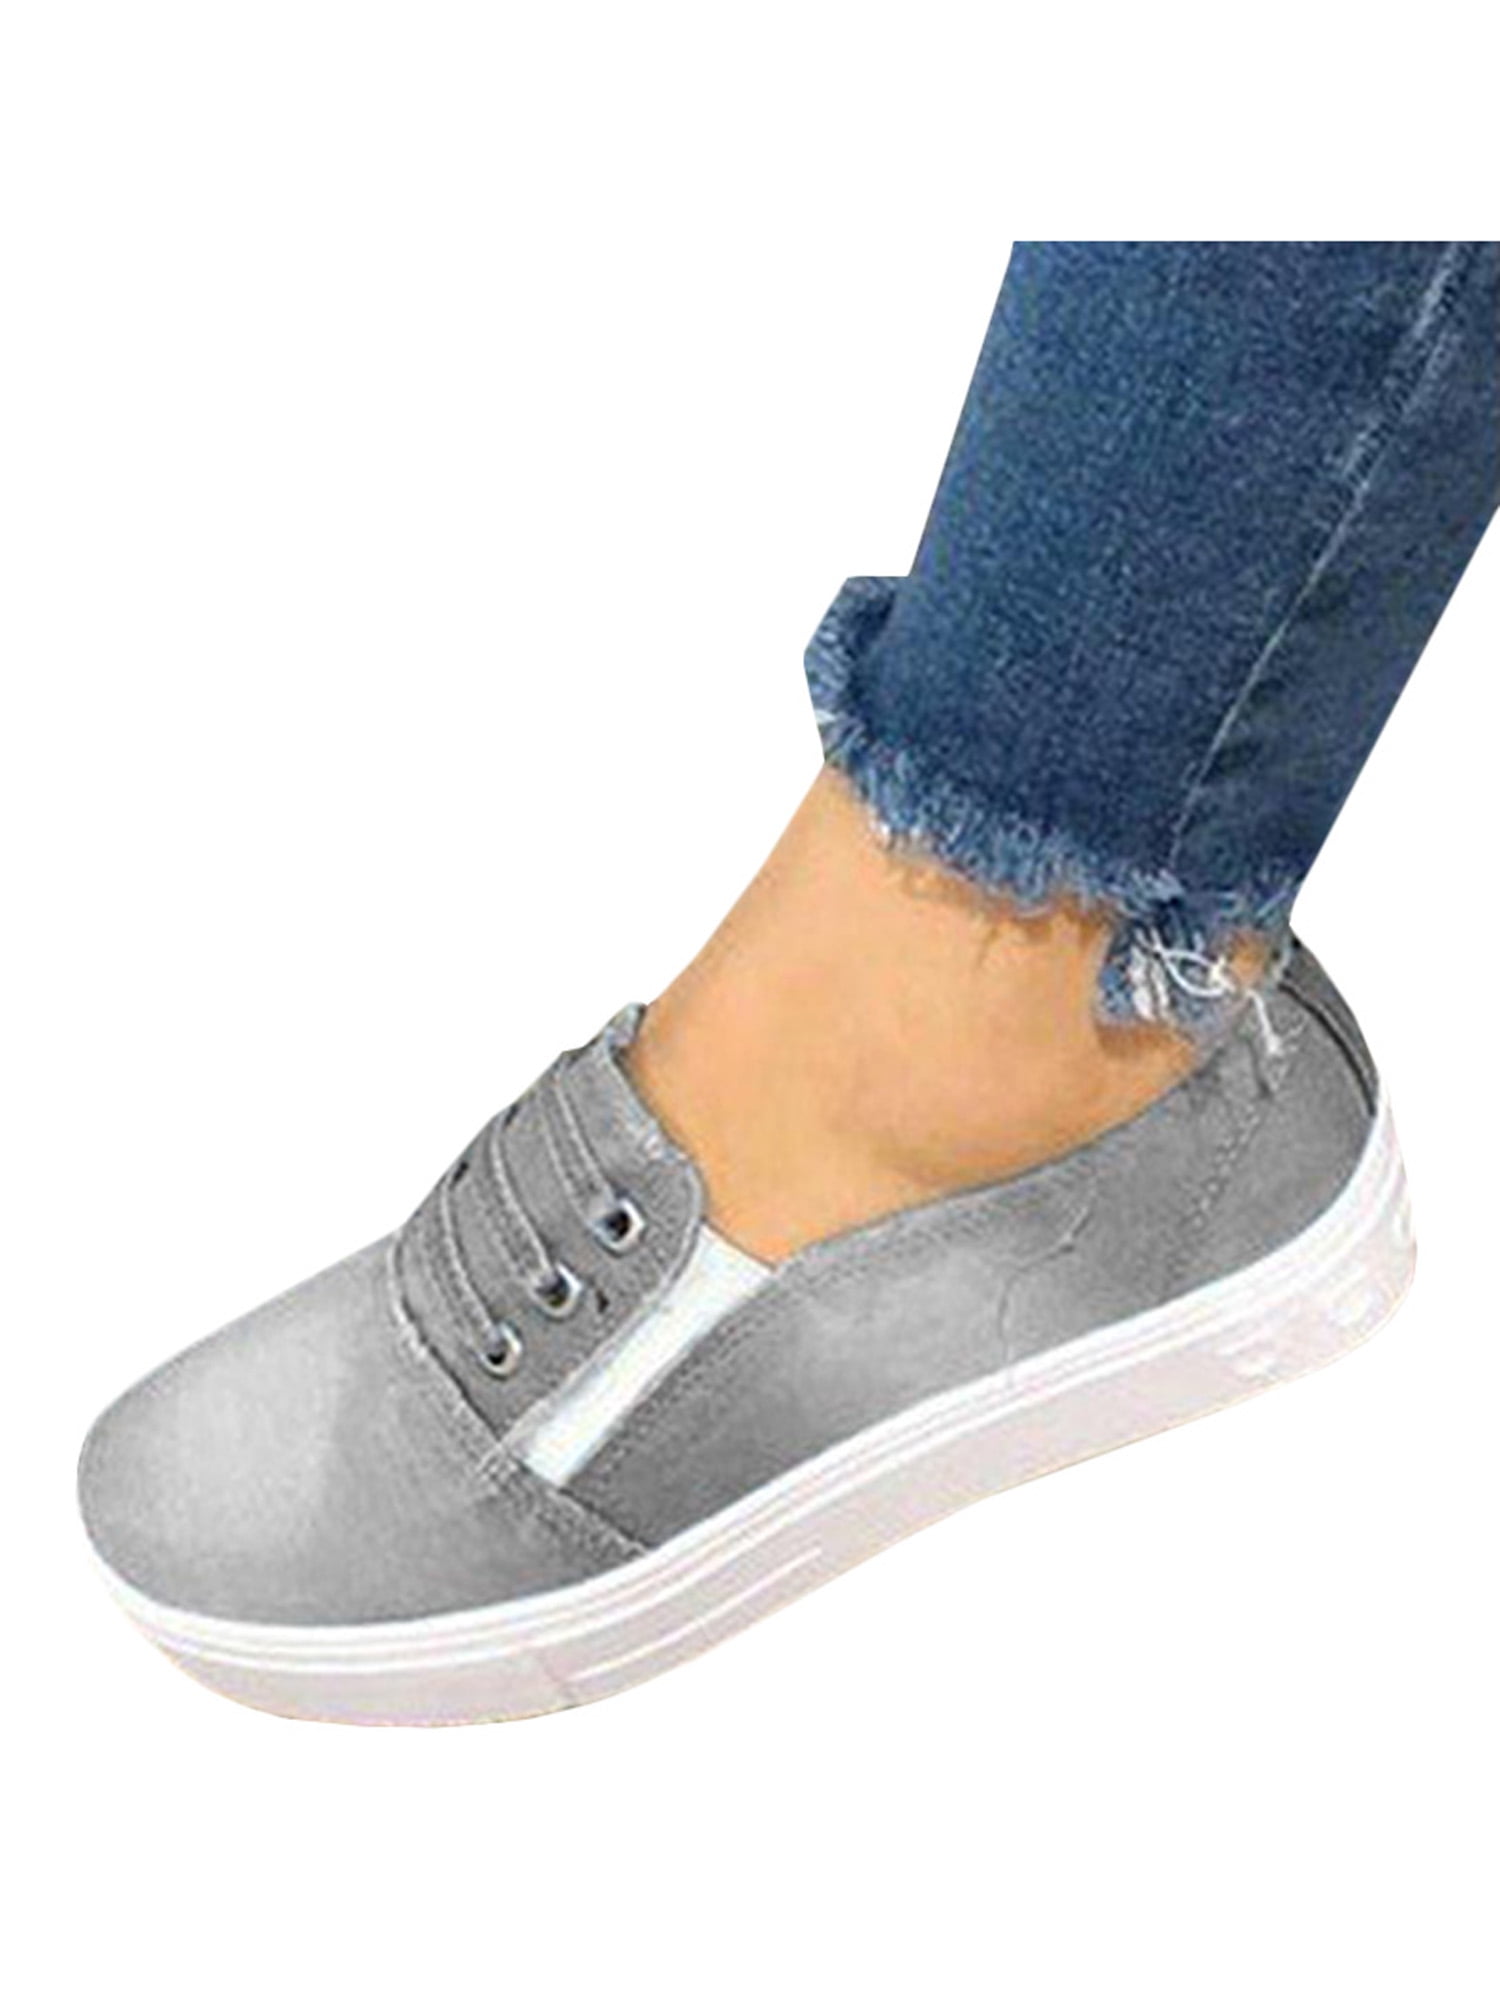 slip on sneakers grey